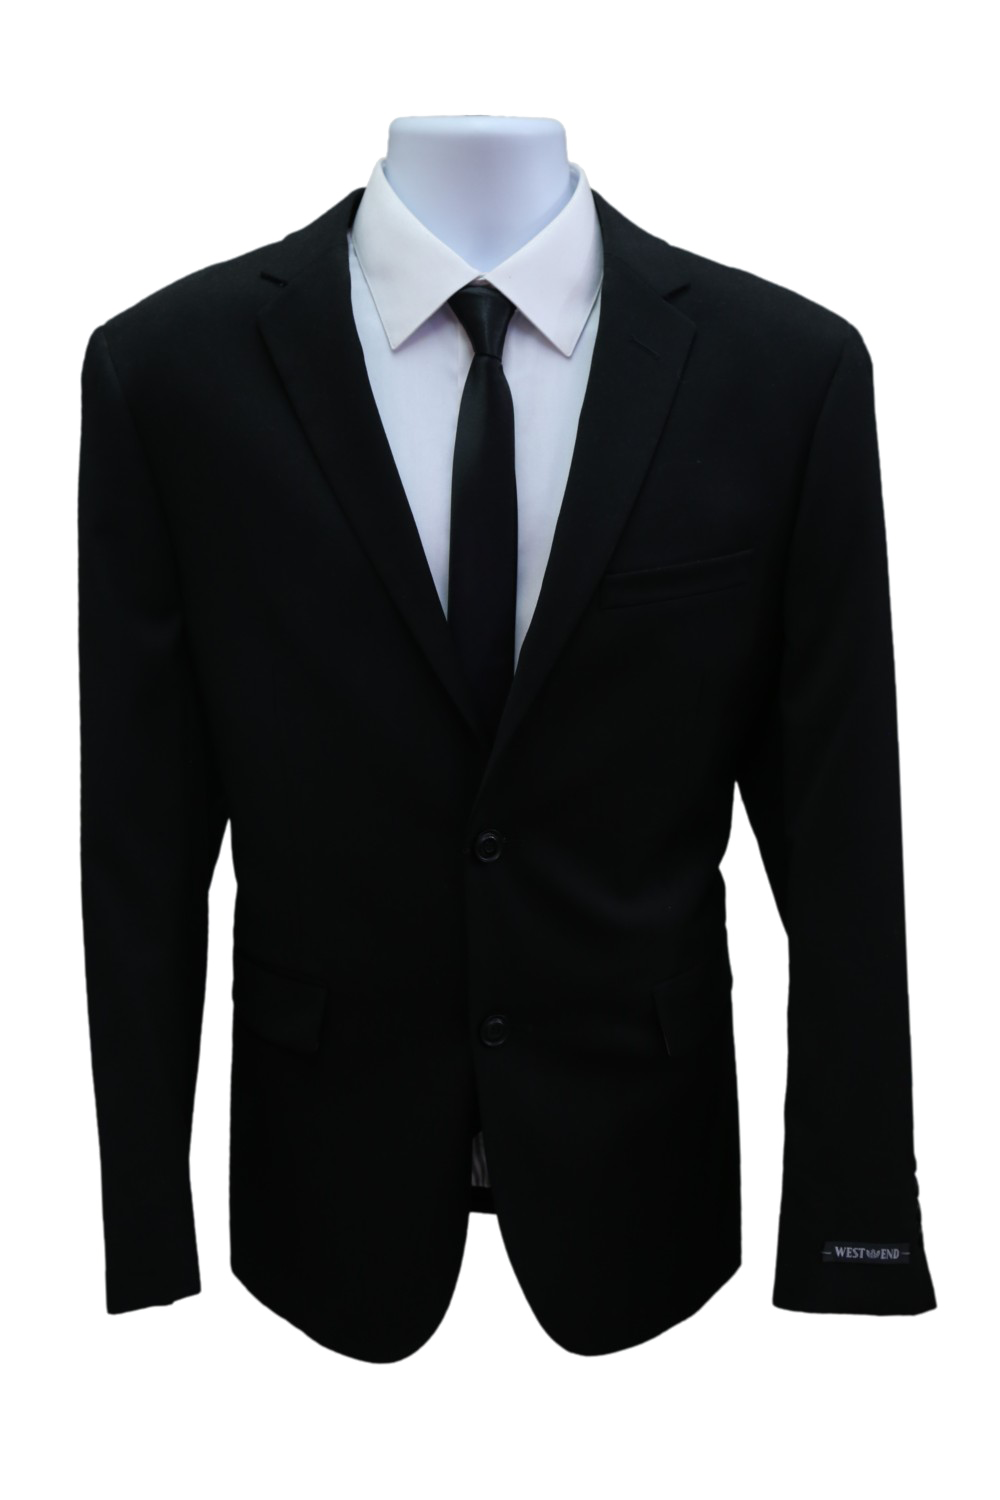 Transparent PVC Suit